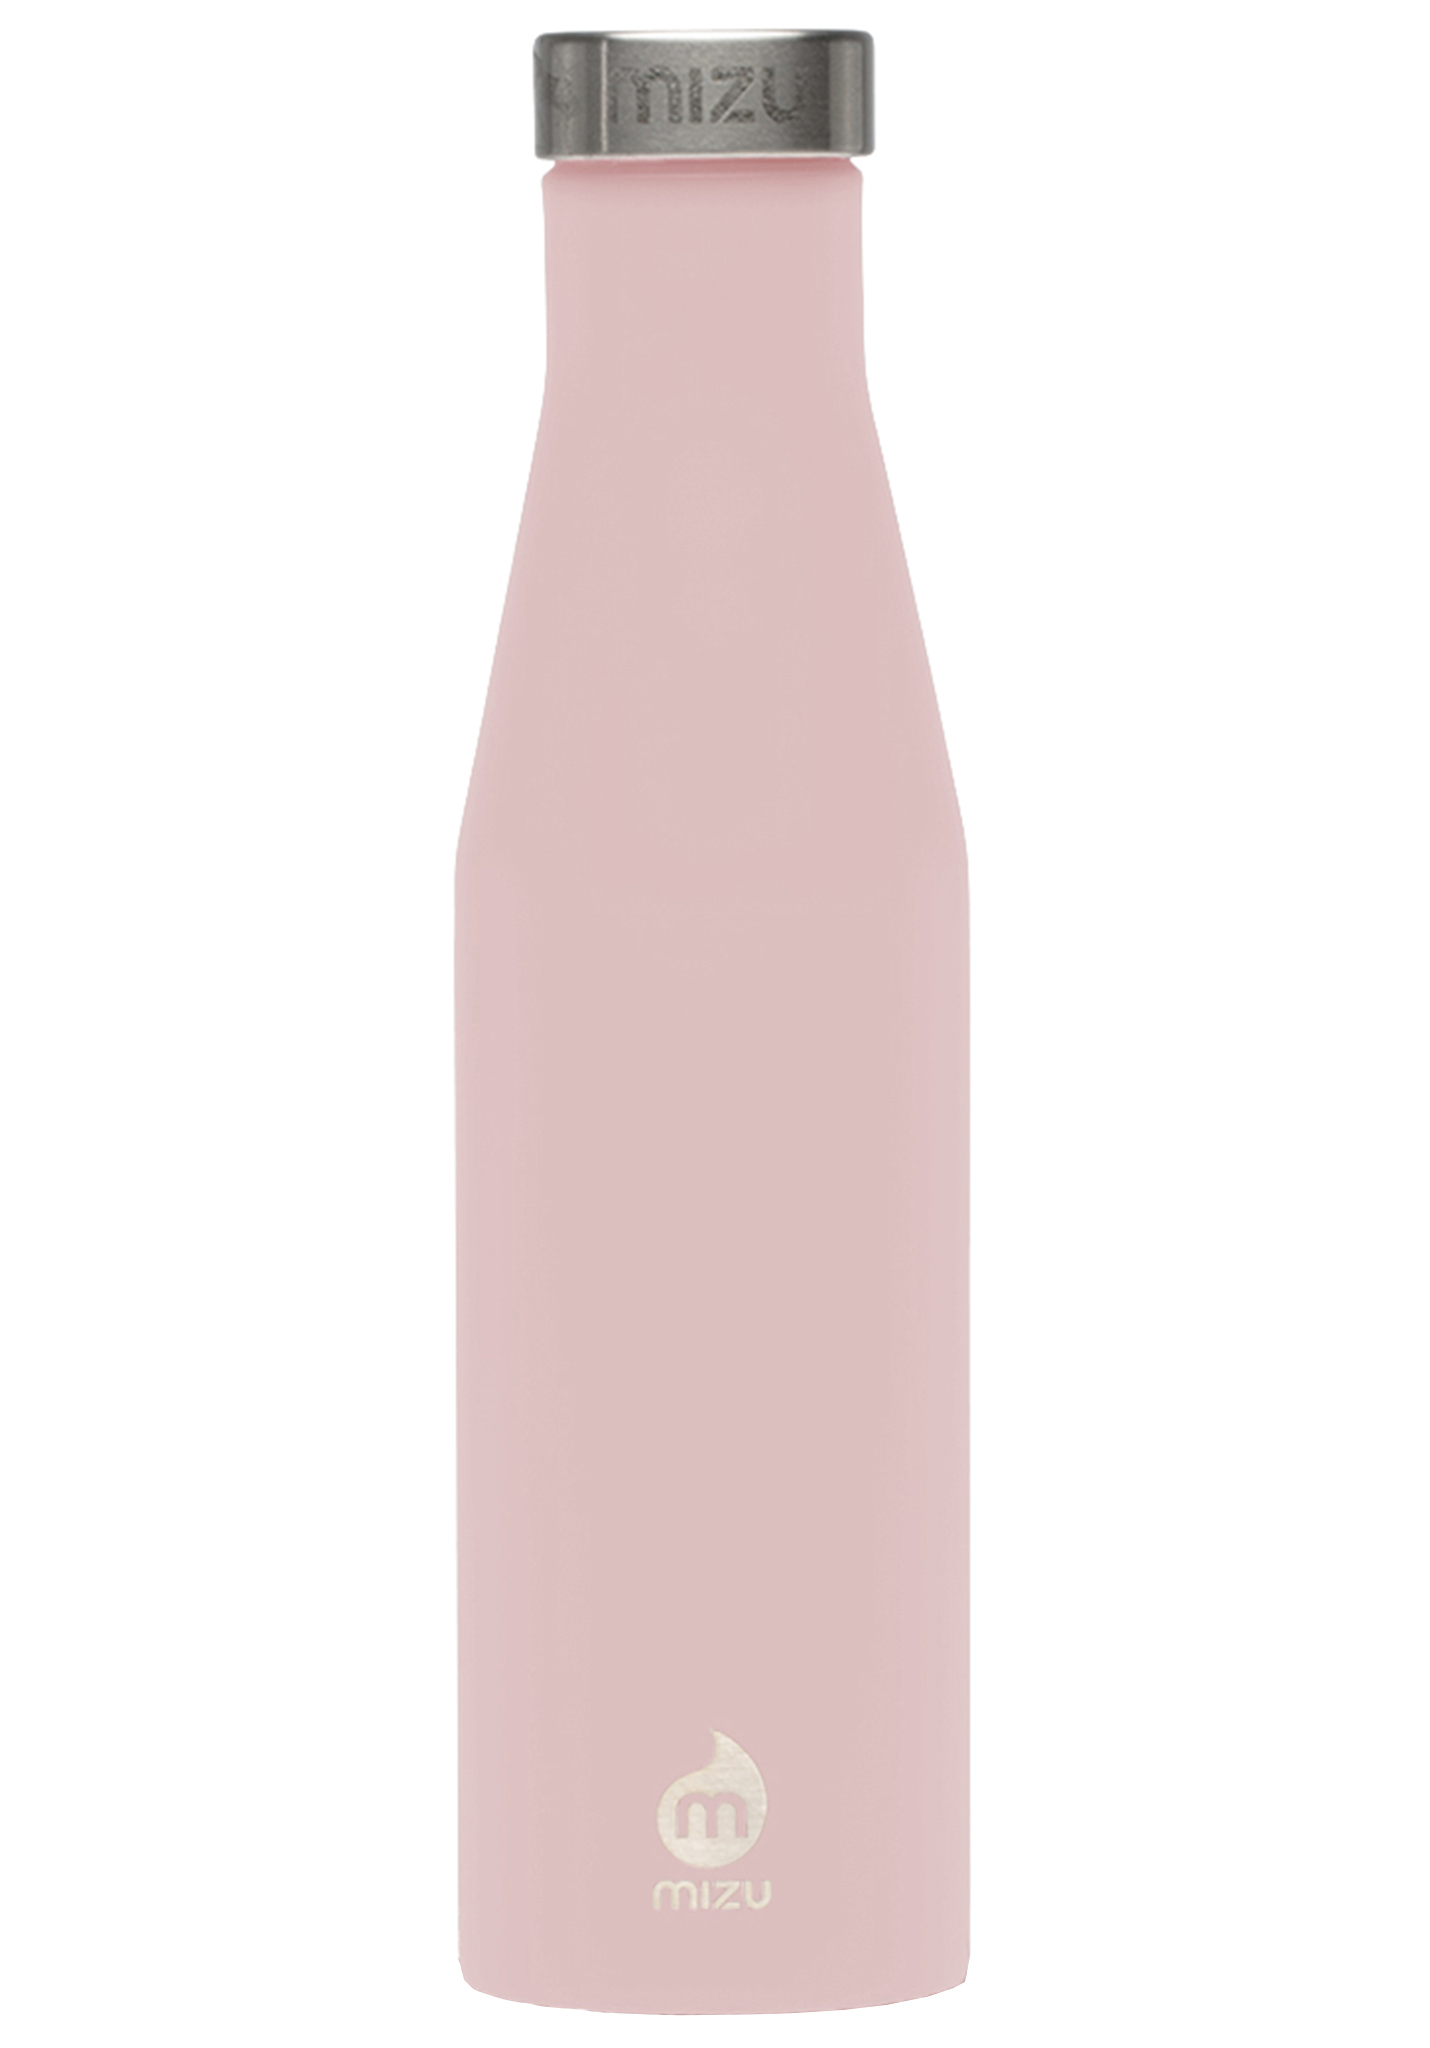 Mizu S6 - 600ml Trinkflaschen enduro weich rosa le w sst kappe One Size